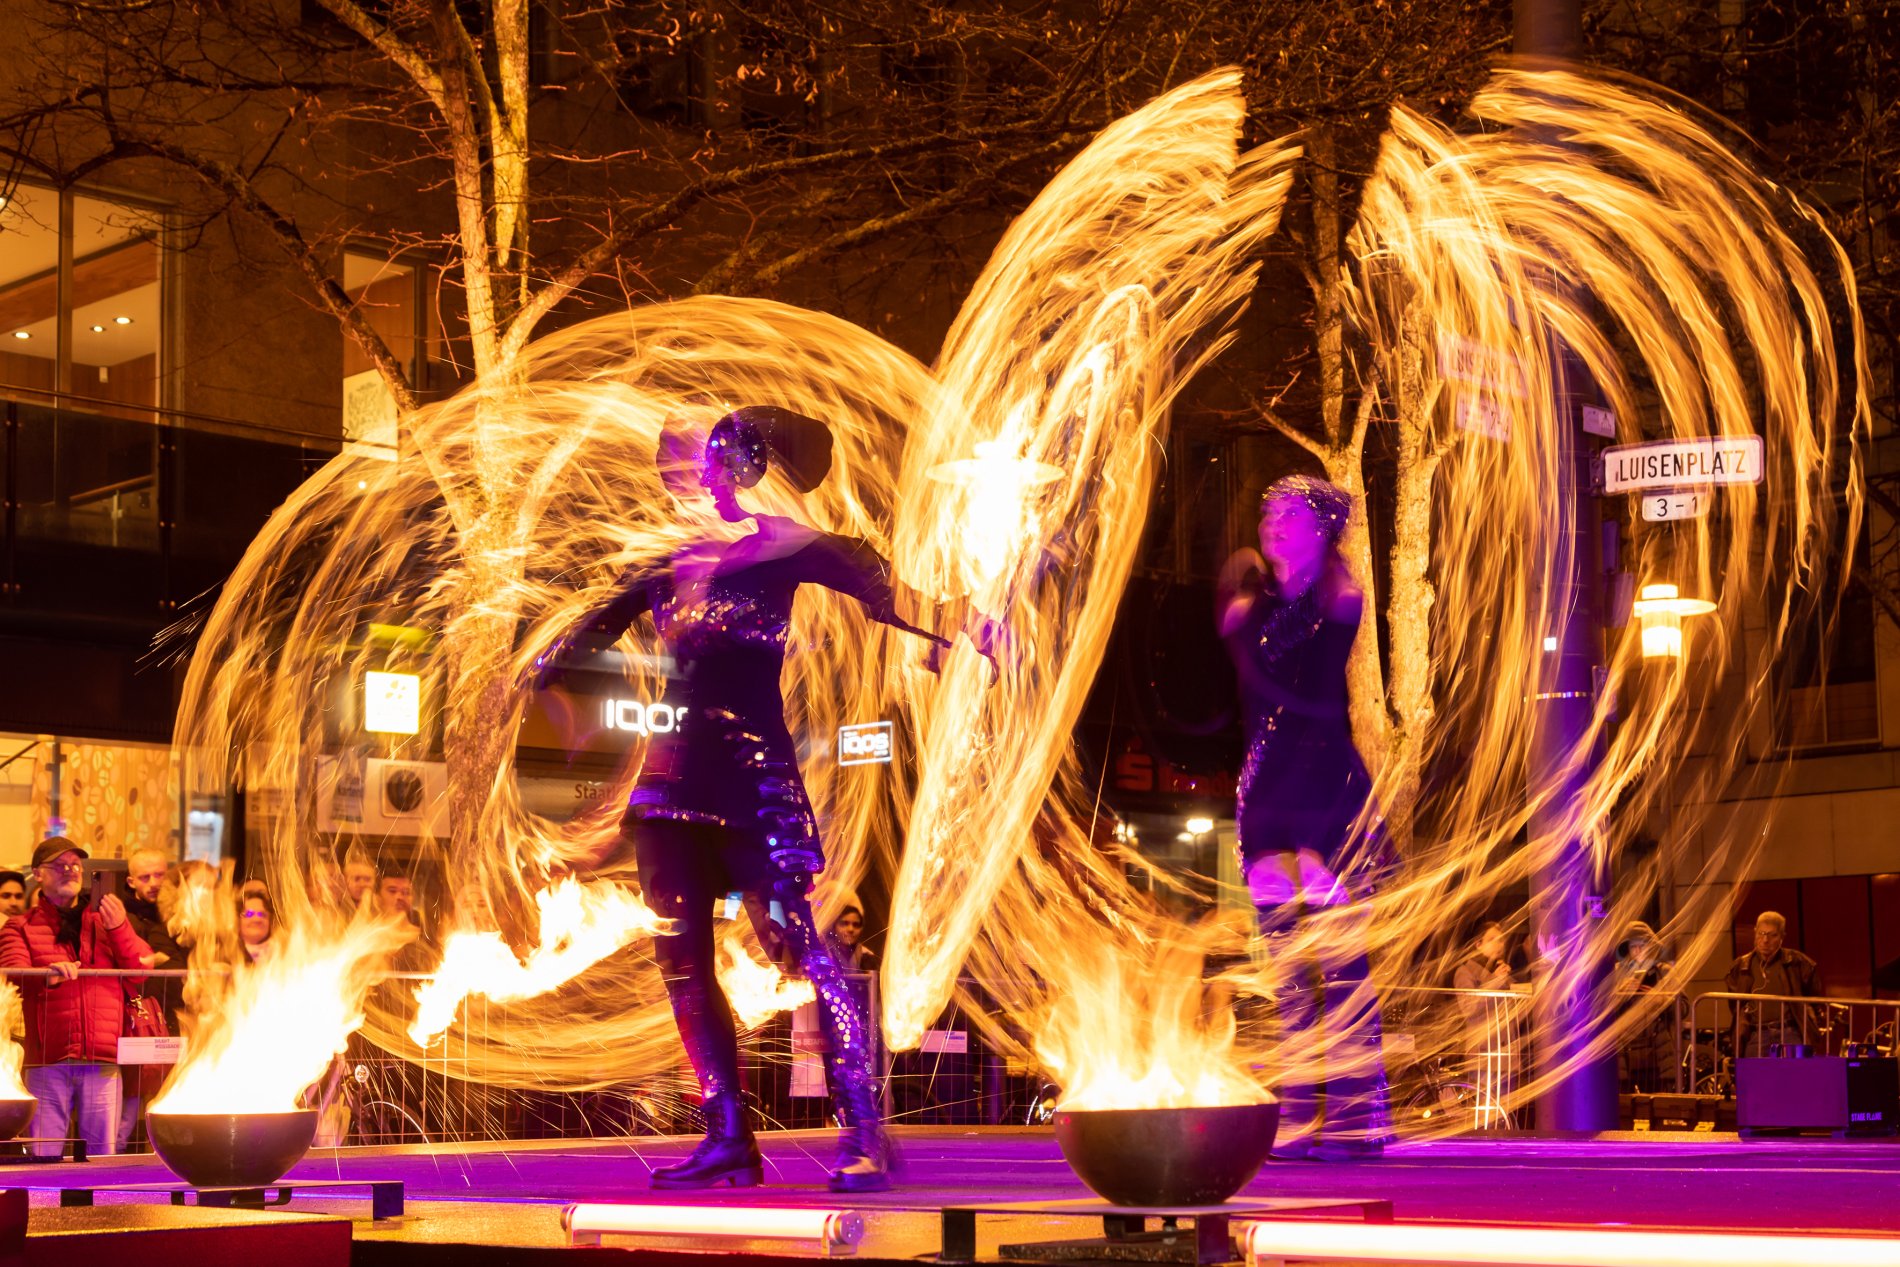 Feuershow, zwei Personen die mit brennenden Fackeln große feurige Kreise um sich herum ziehen.